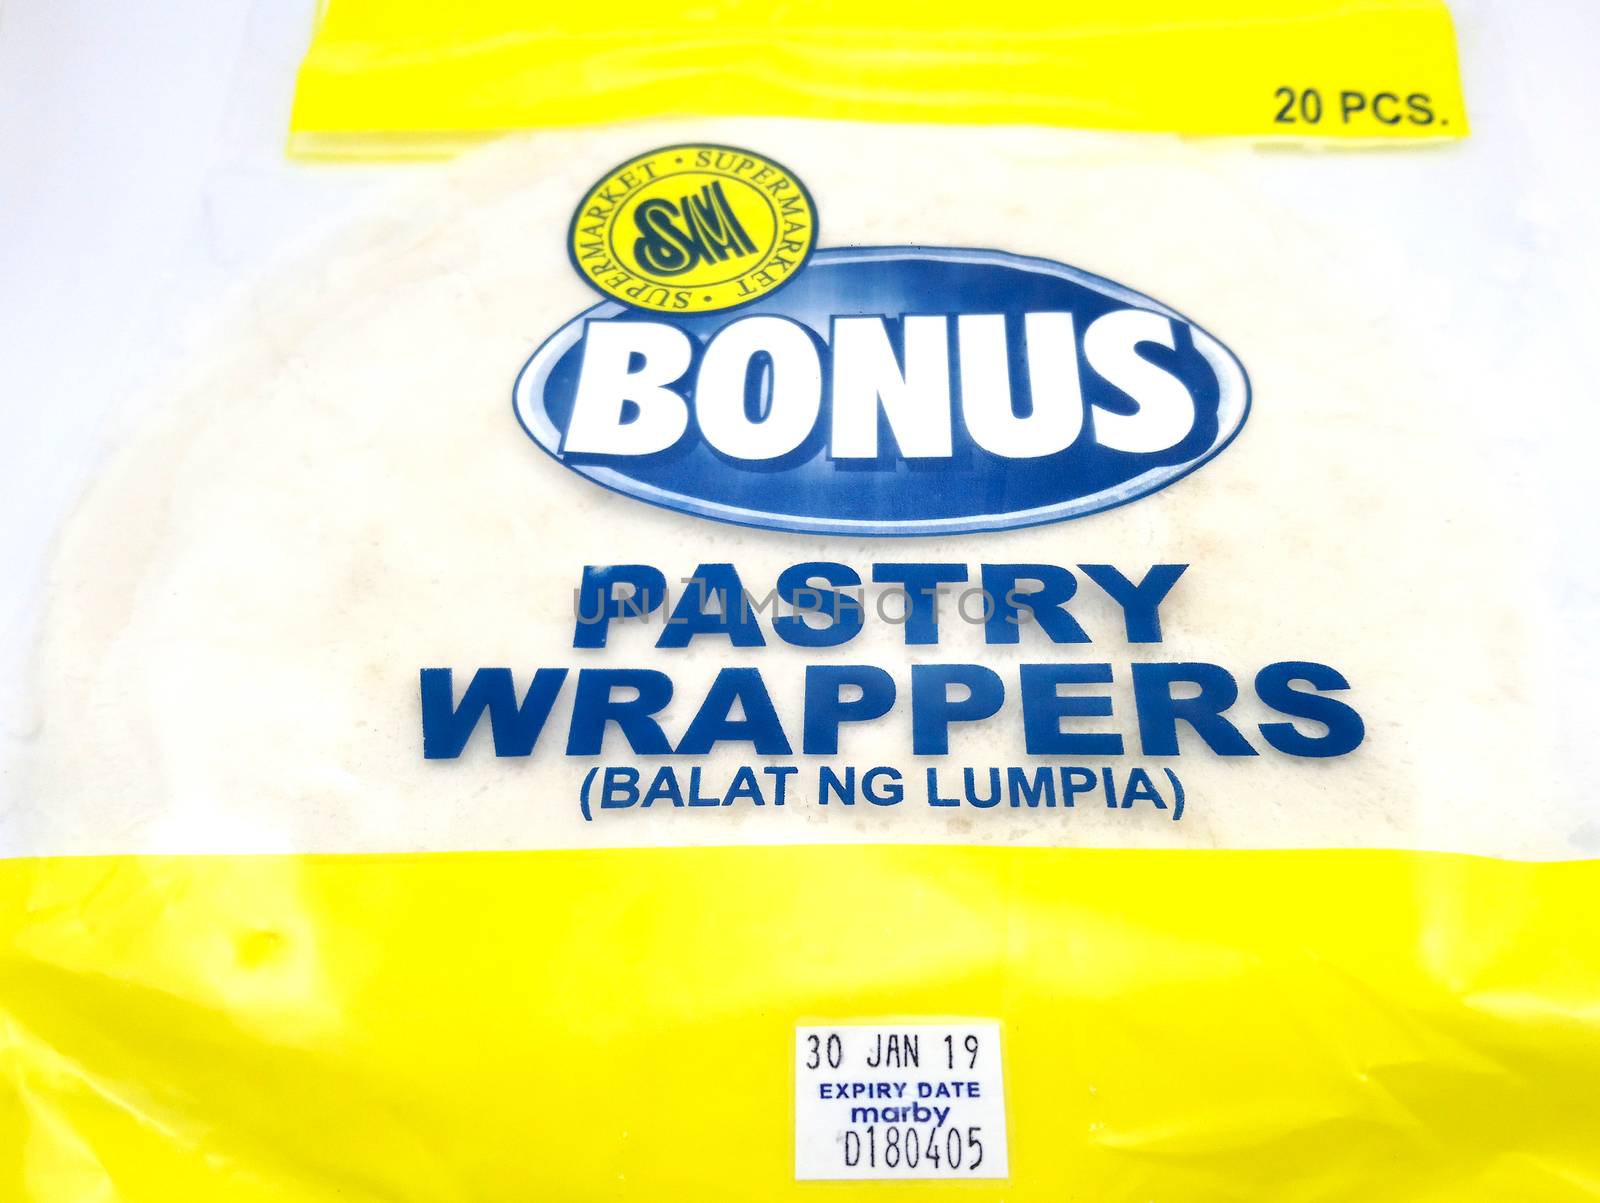 MANILA, PH - JUNE 23 - SM bonus pastry wrappers on June 23, 2020 in Manila, Philippines.